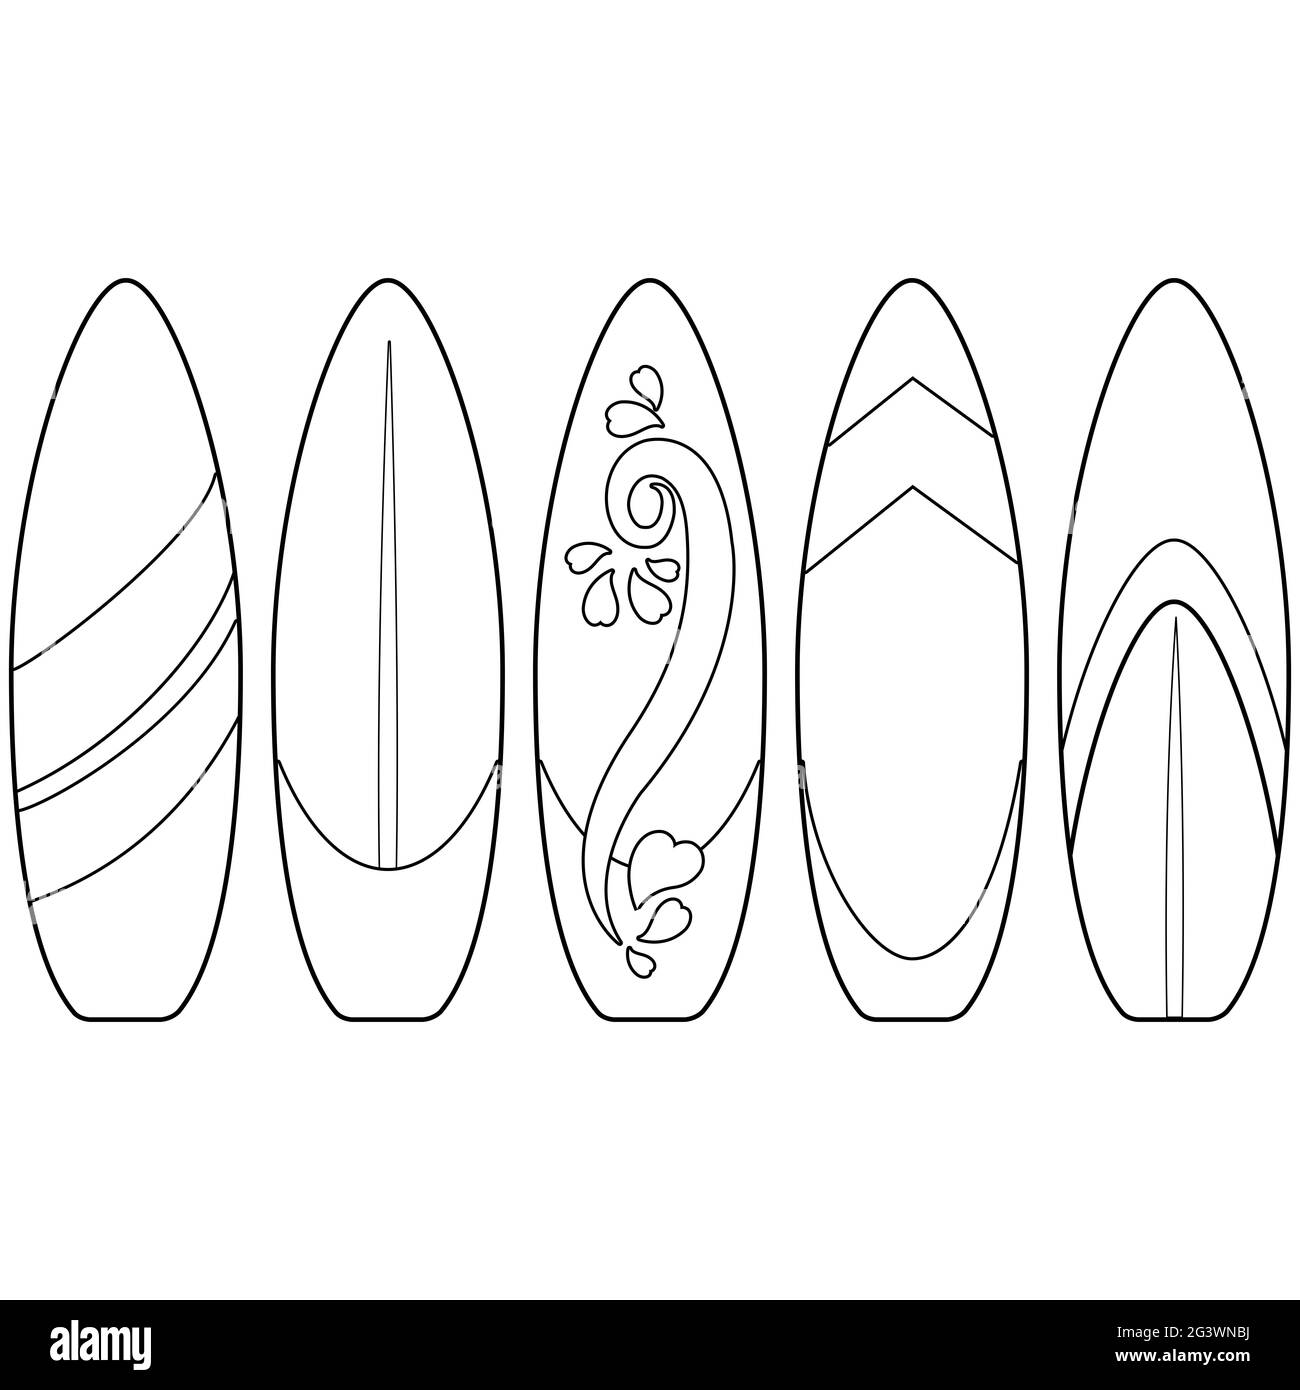 Planches de surf Banque d'images noir et blanc - Alamy